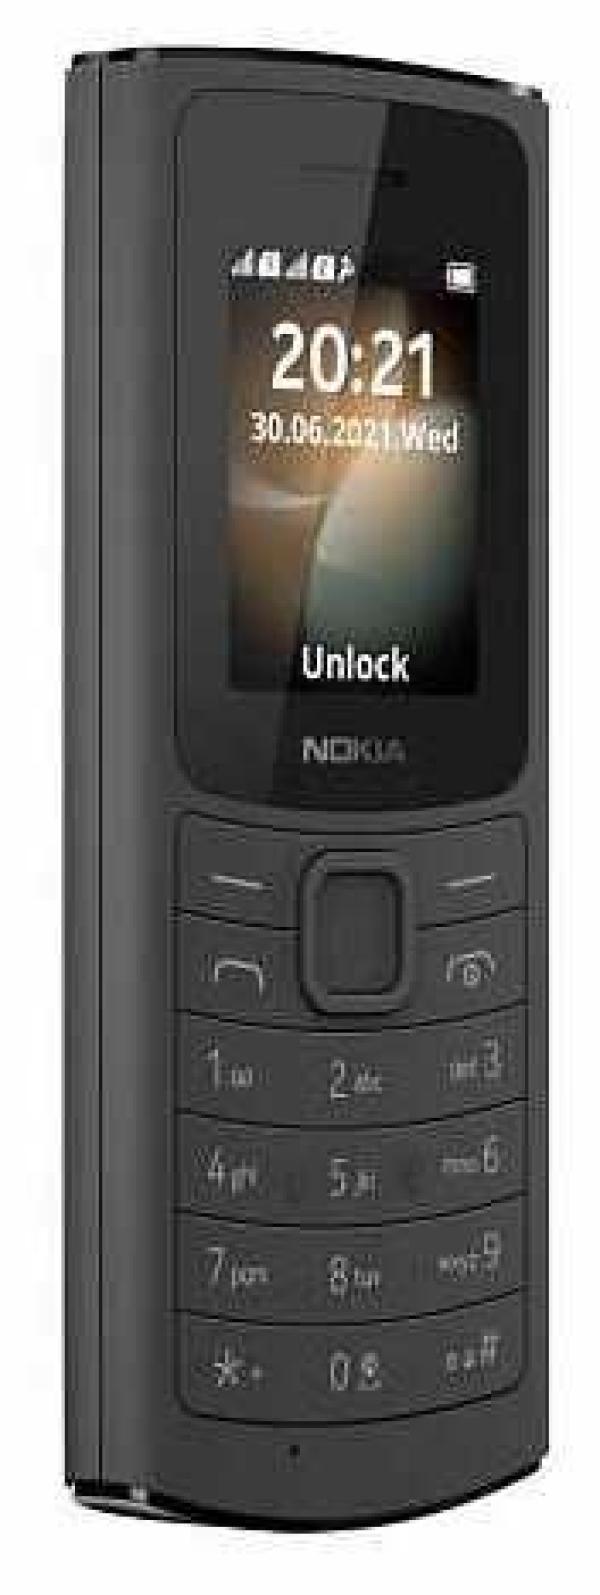 Мобильный телефон 2*SIM Nokia 110 4G DS, GSM900/1800/1900, 1.8" 160*120, FM радио, MP3 плеер, 50*121*14.4мм 85г, черный